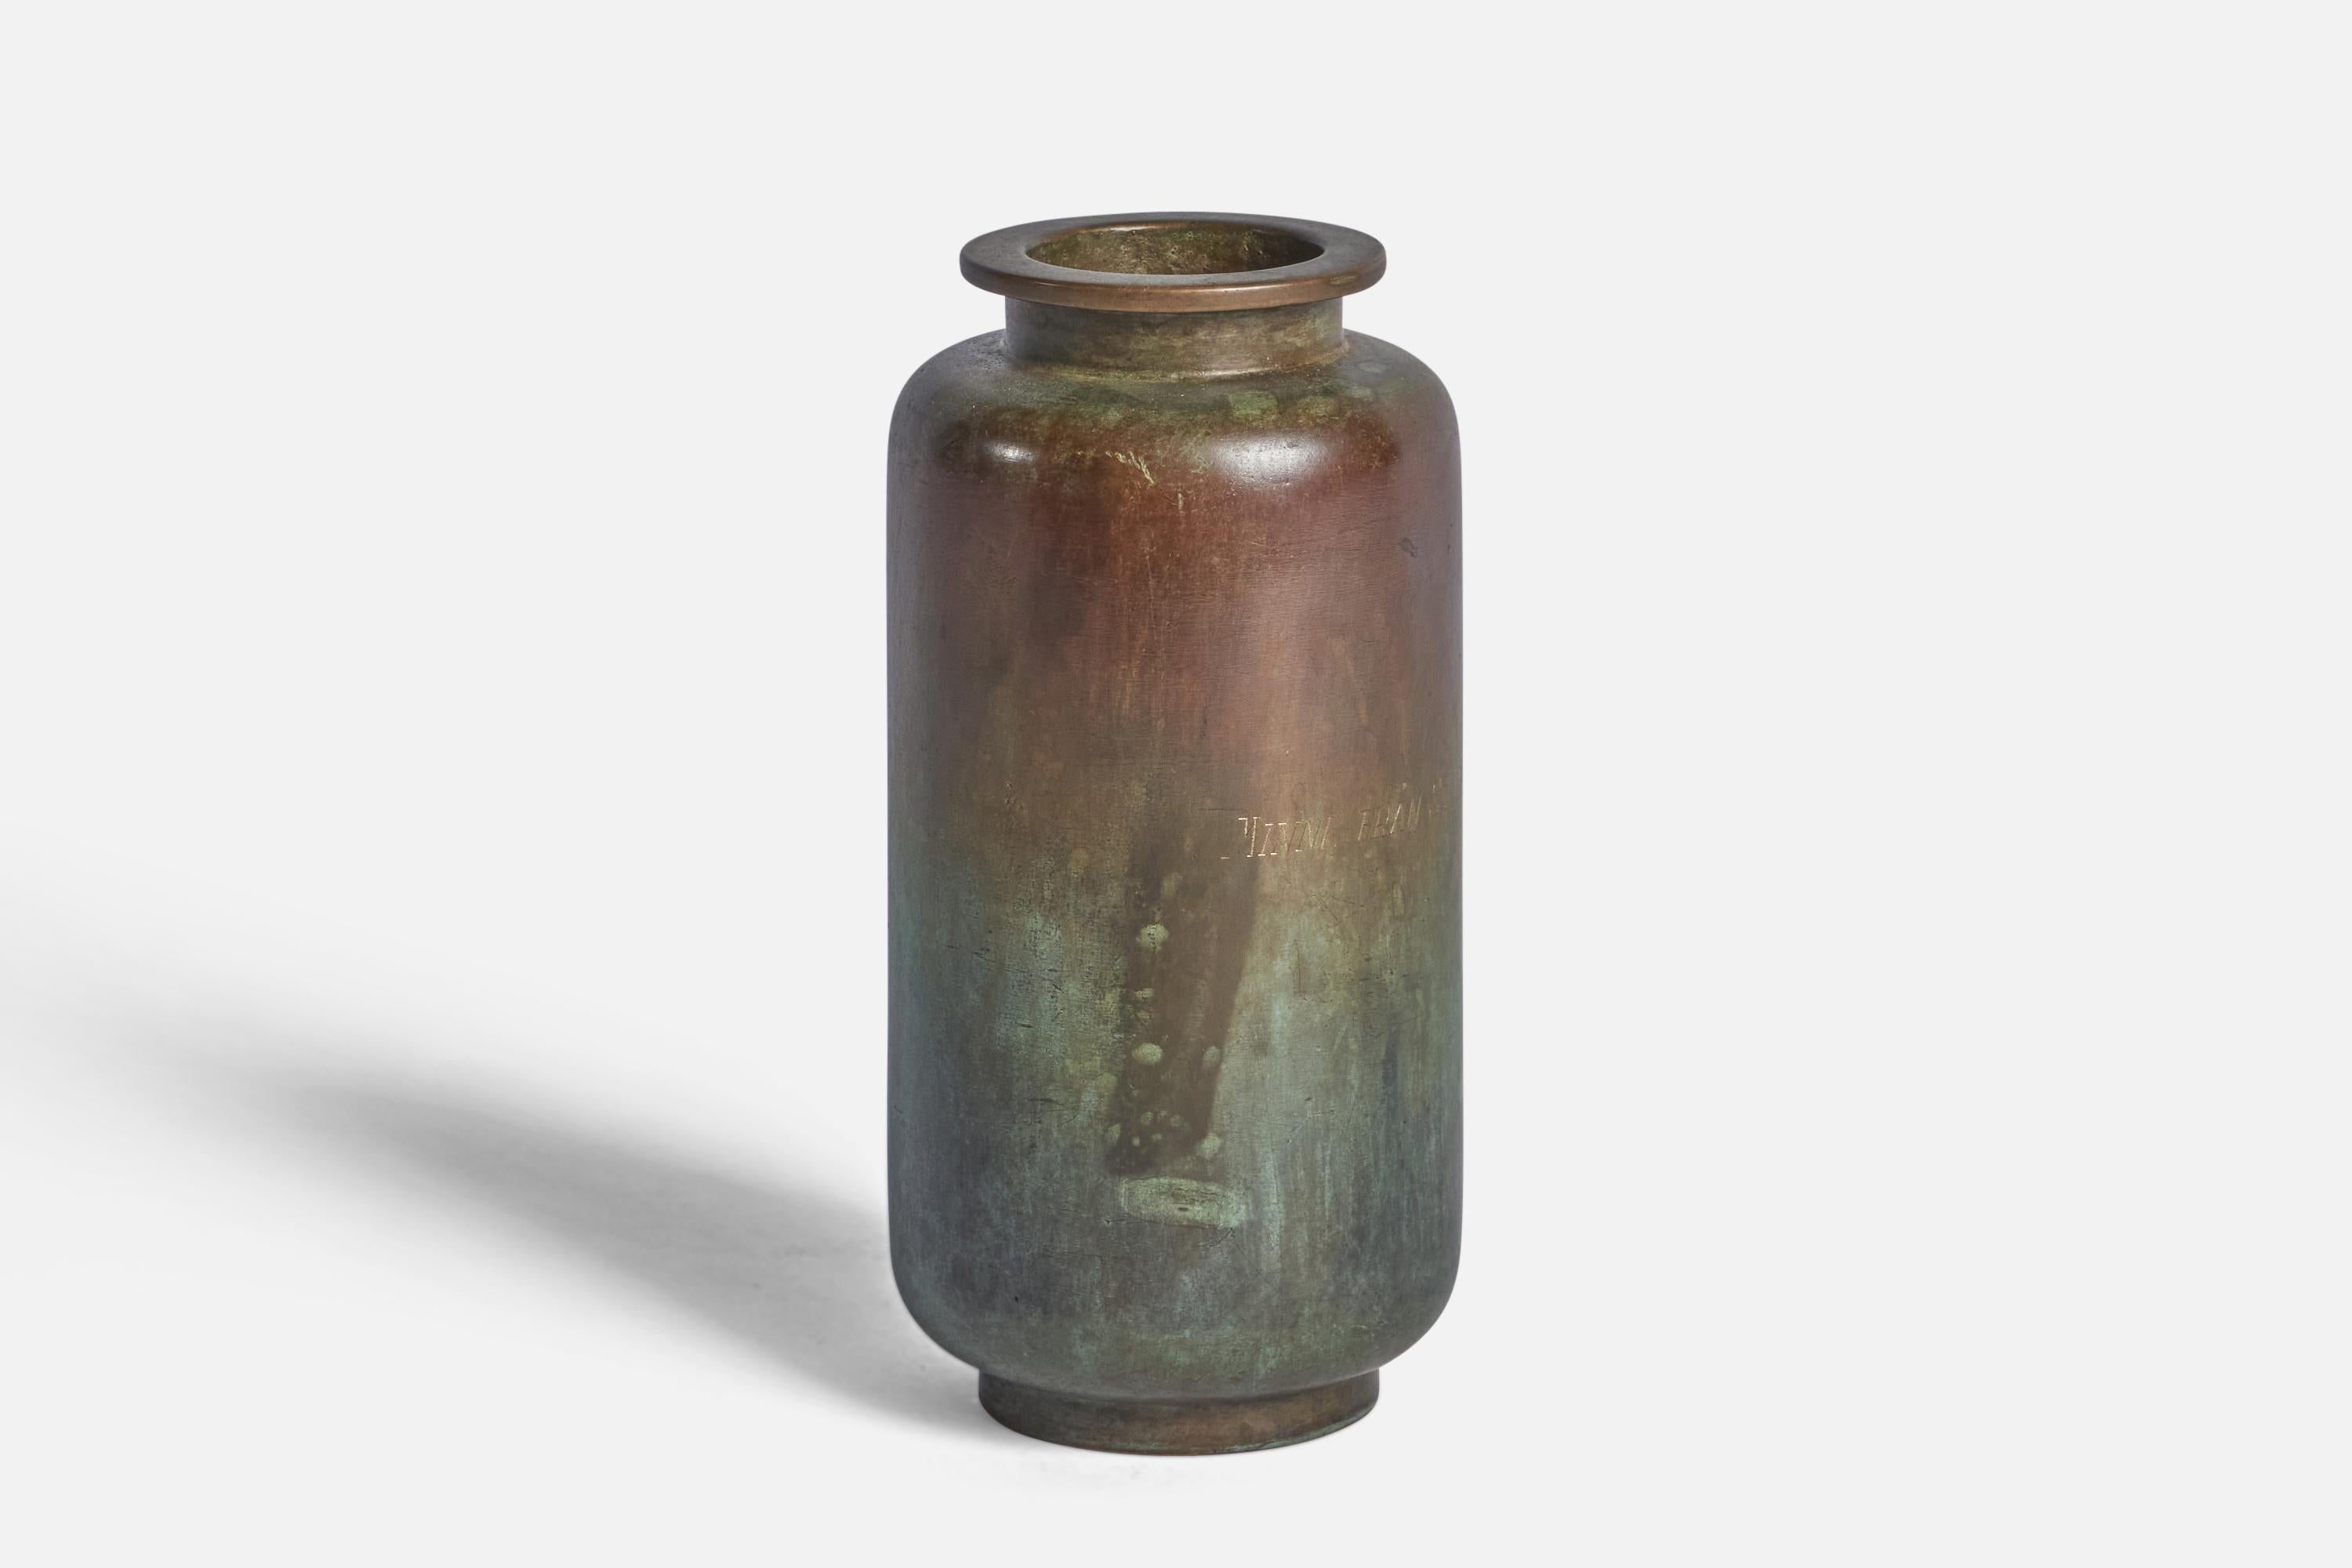 A bronze vase designed and produced by GAB Guldsmedsaktiebolaget, Sweden, 1930s.